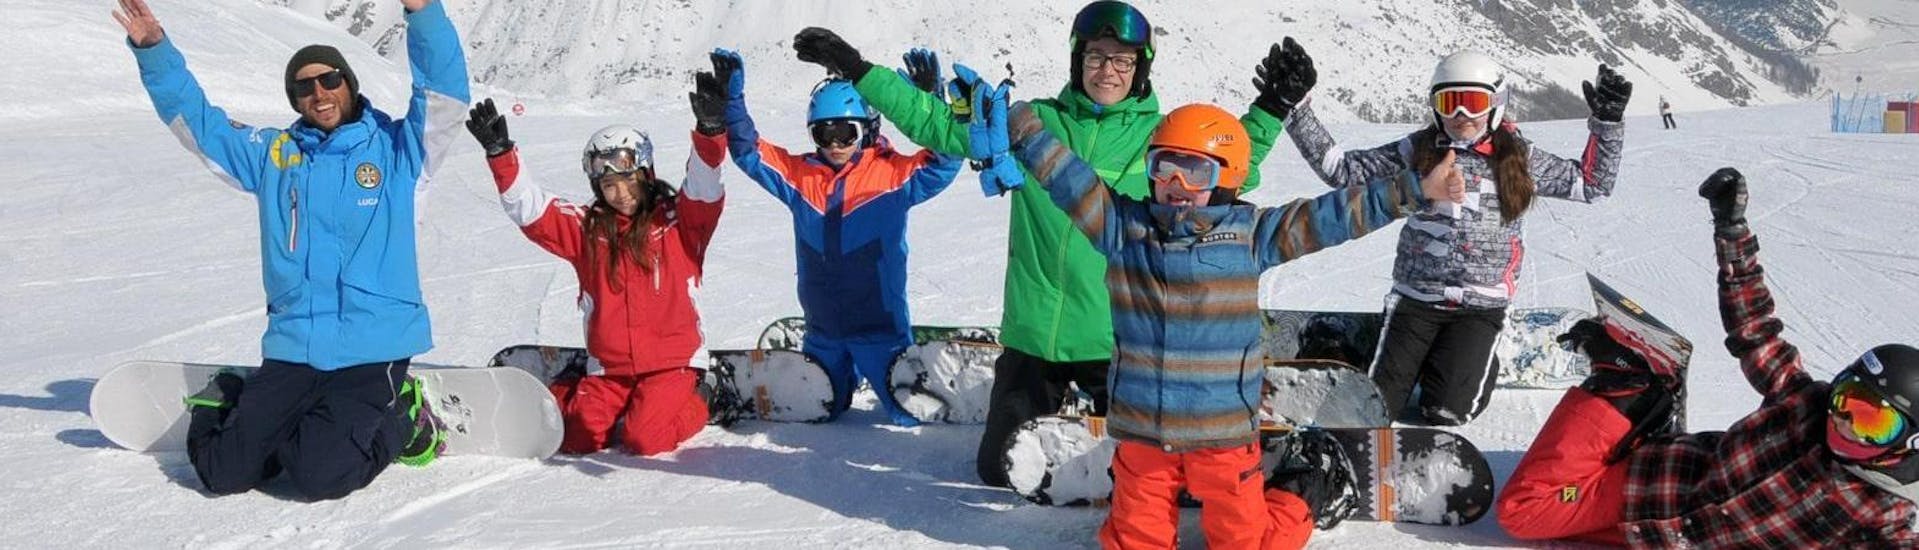 Snowboardlessen voor Kinderen en Volwassenen van Alle Niveaus.